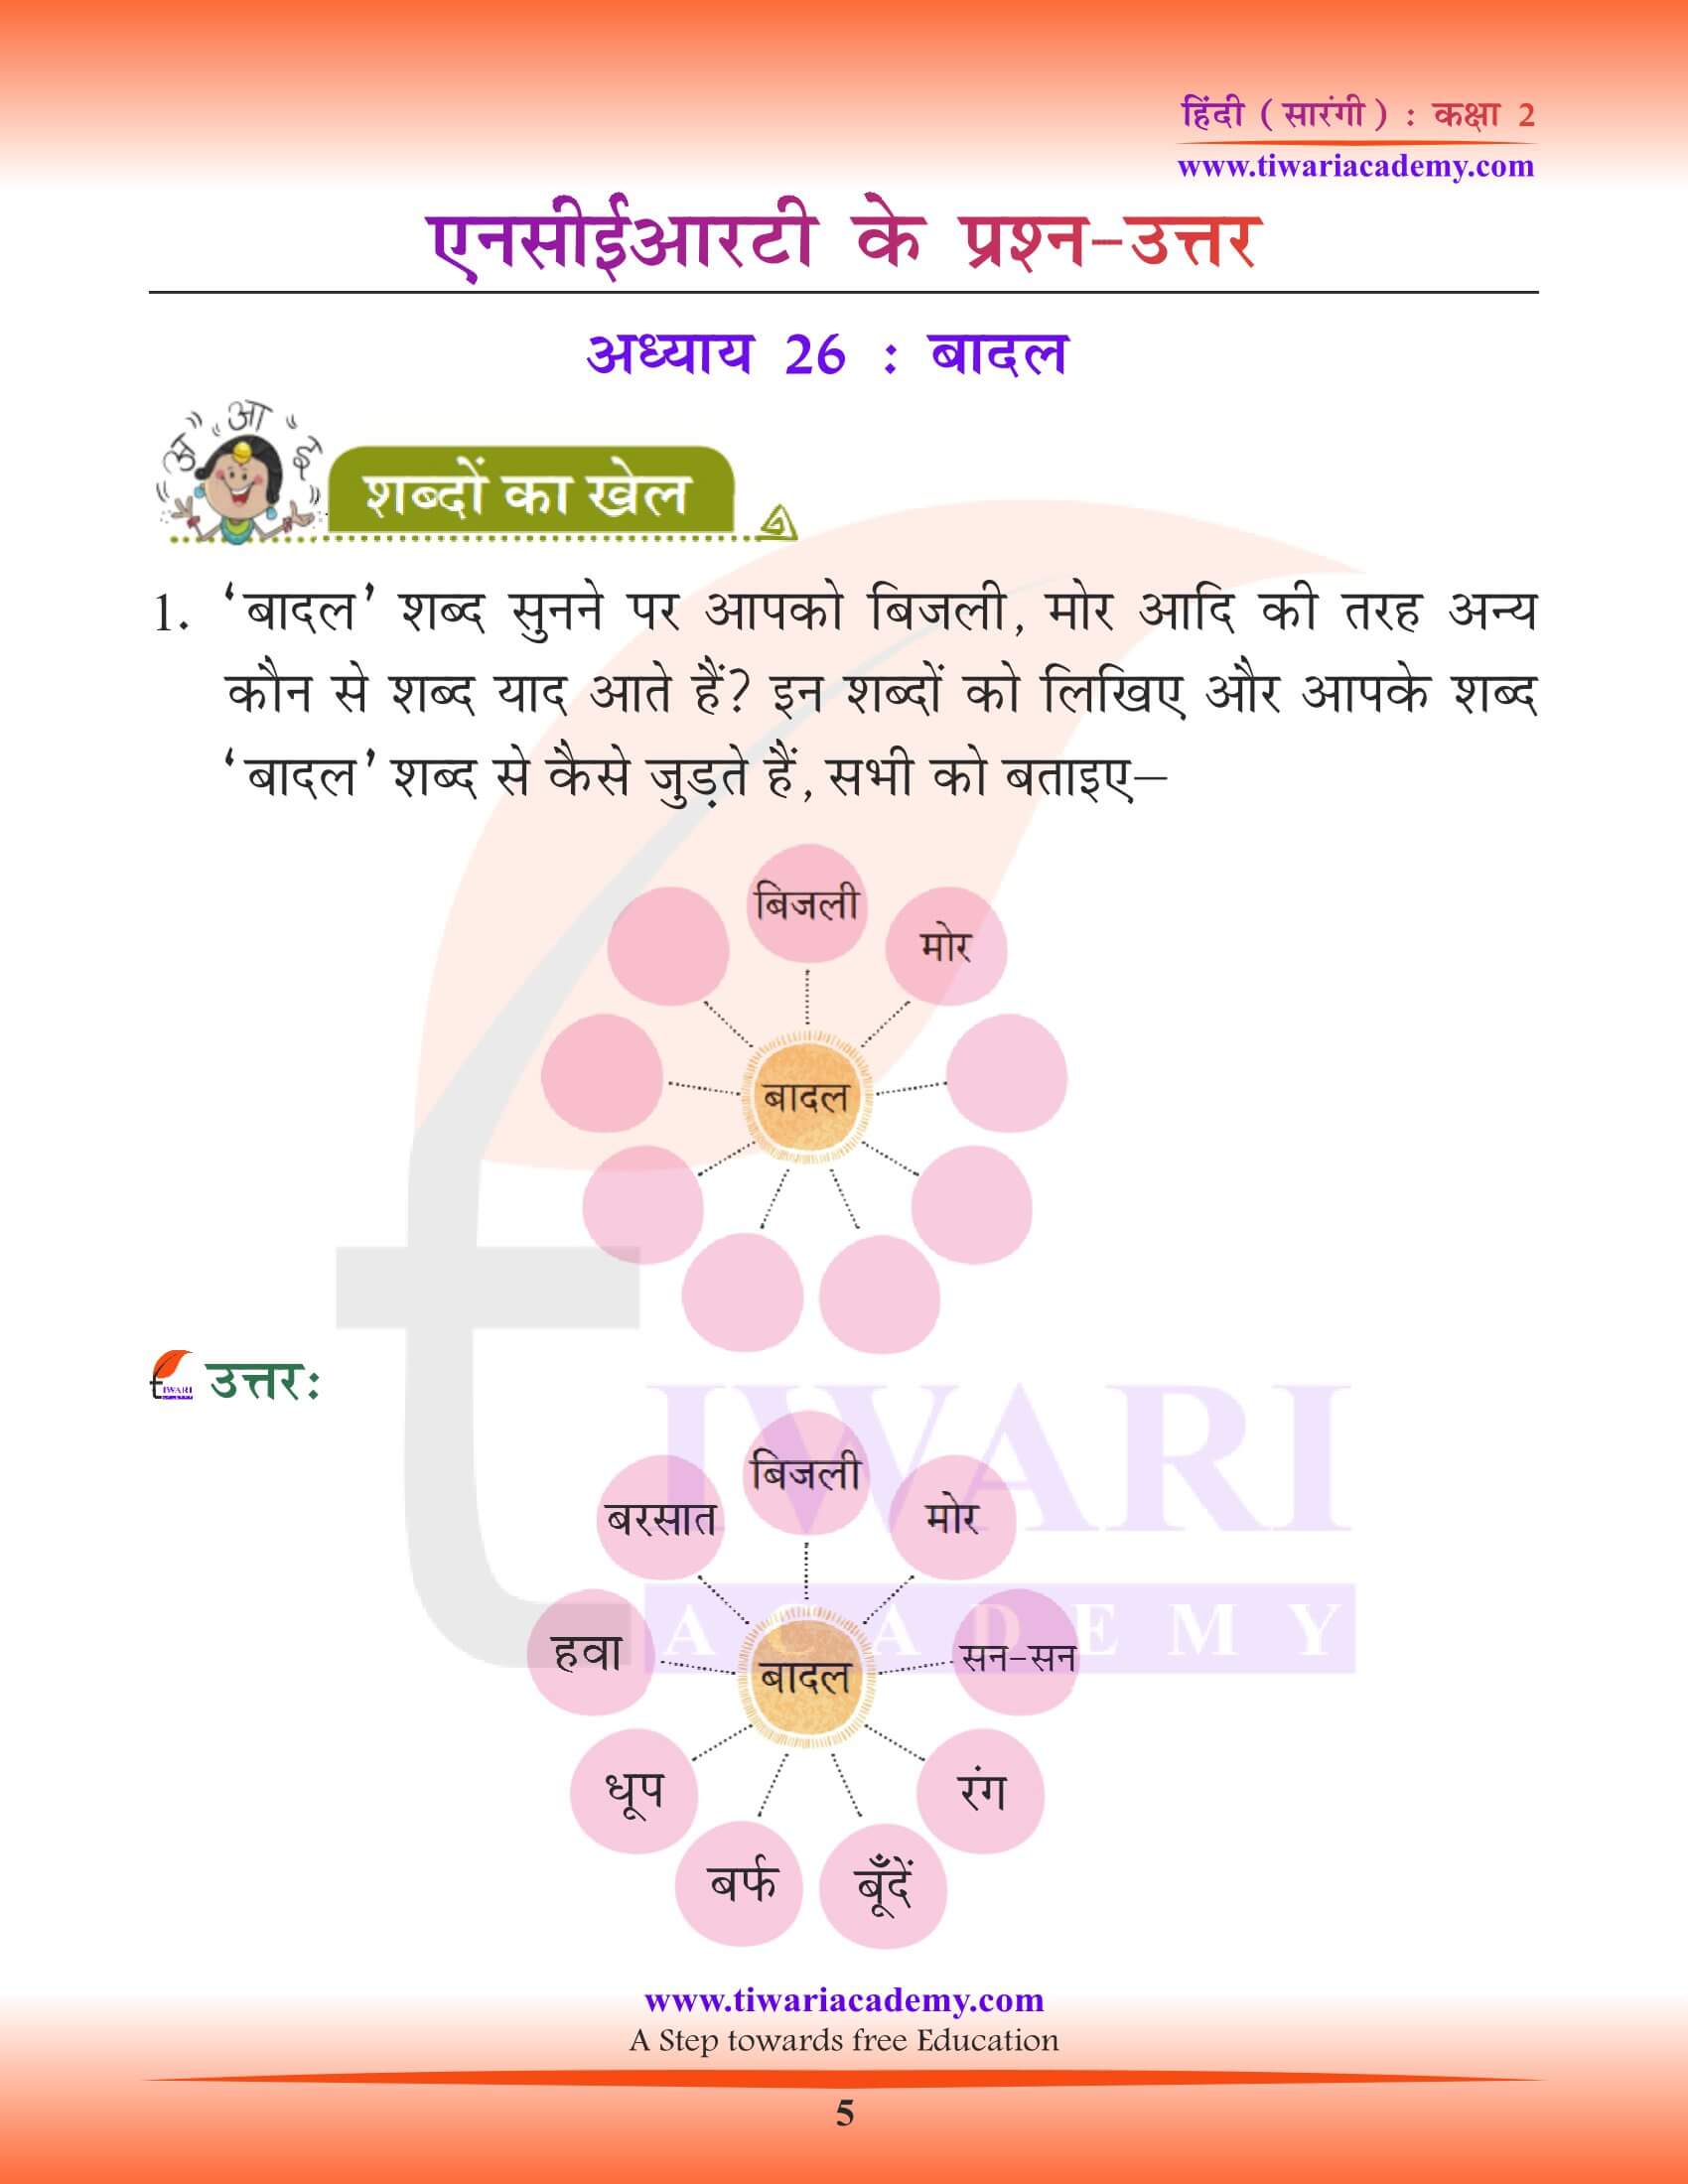 कक्षा 2 हिंदी सारंगी अध्याय 26 के प्रश्न उत्तर